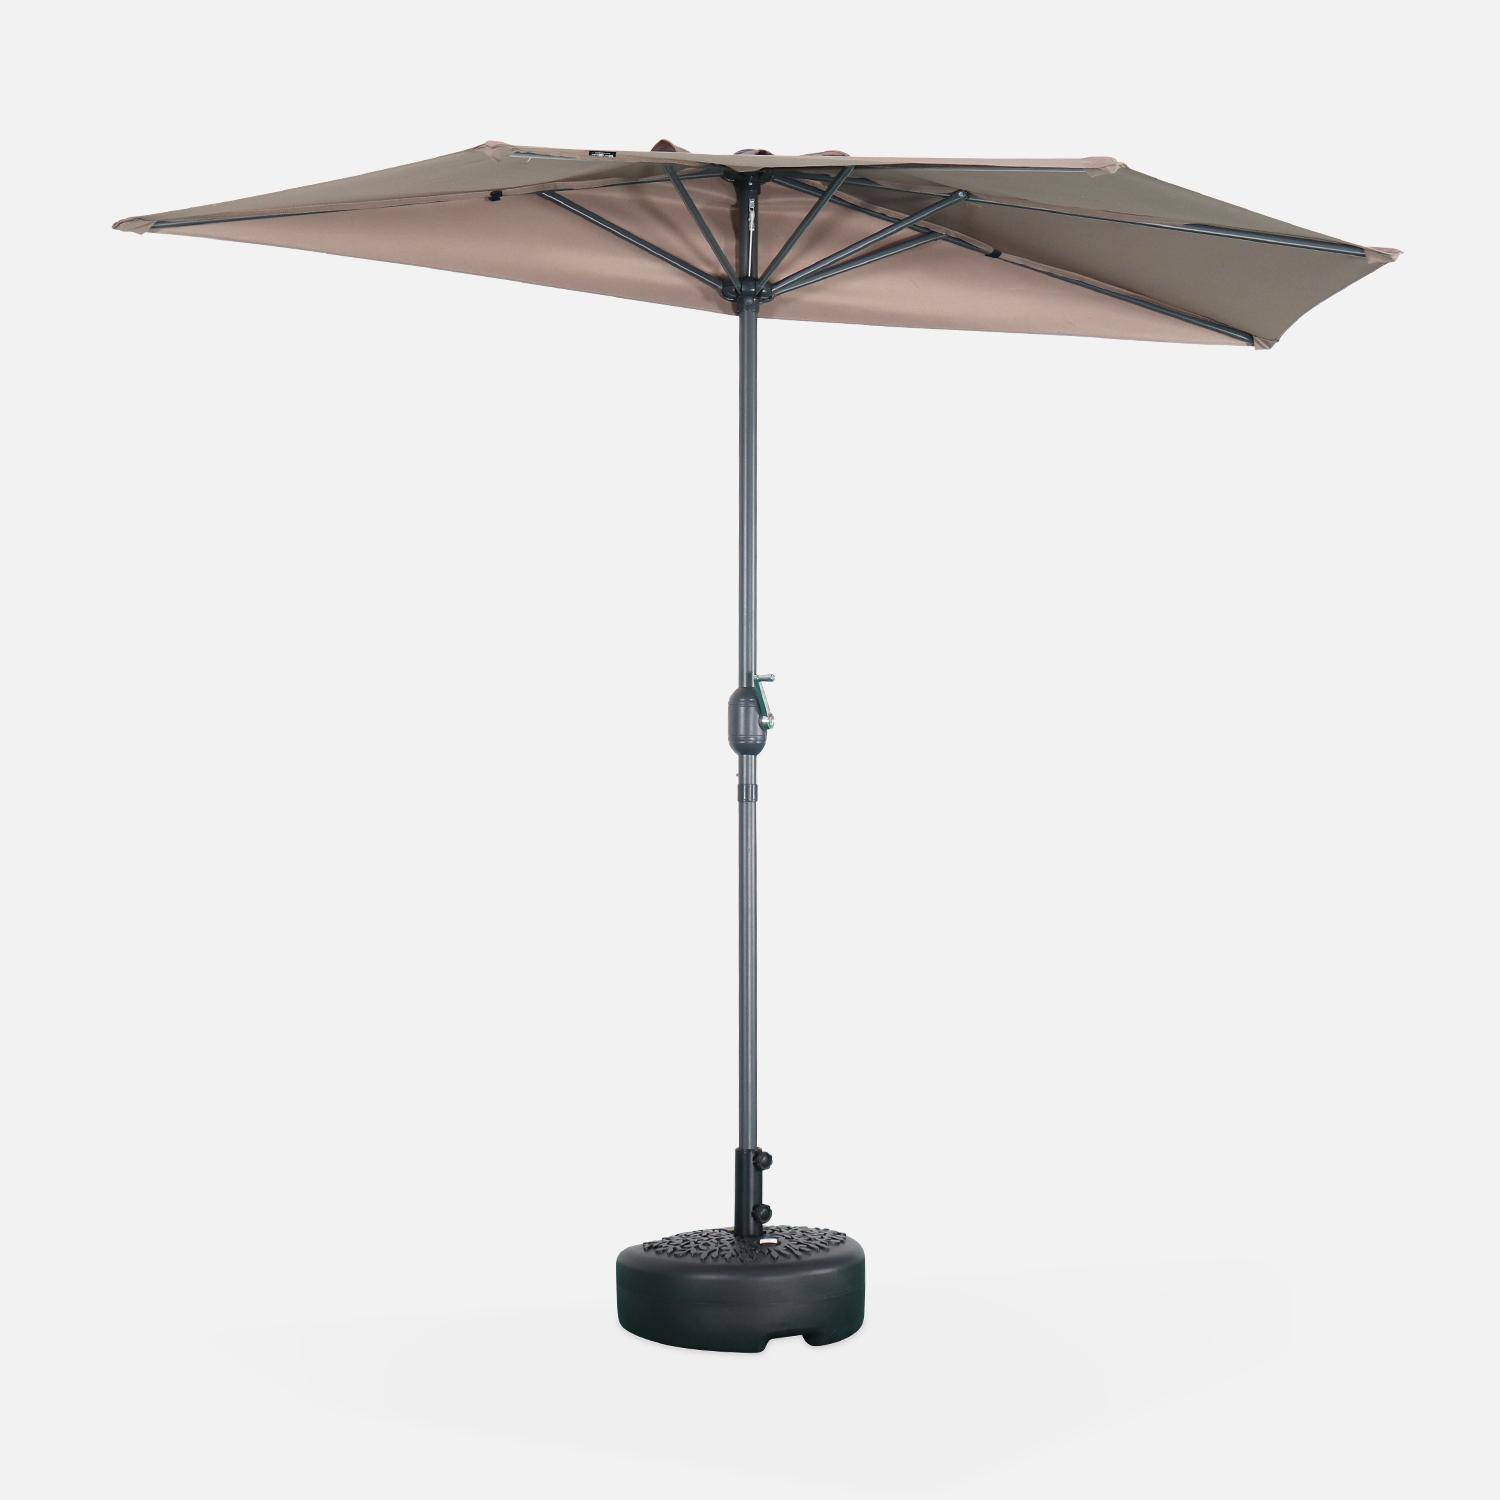  Parasol de balcon Ø250cm  – CALVI – Demi-parasol droit, mât en aluminium avec manivelle d’ouverture, toile taupe Photo1